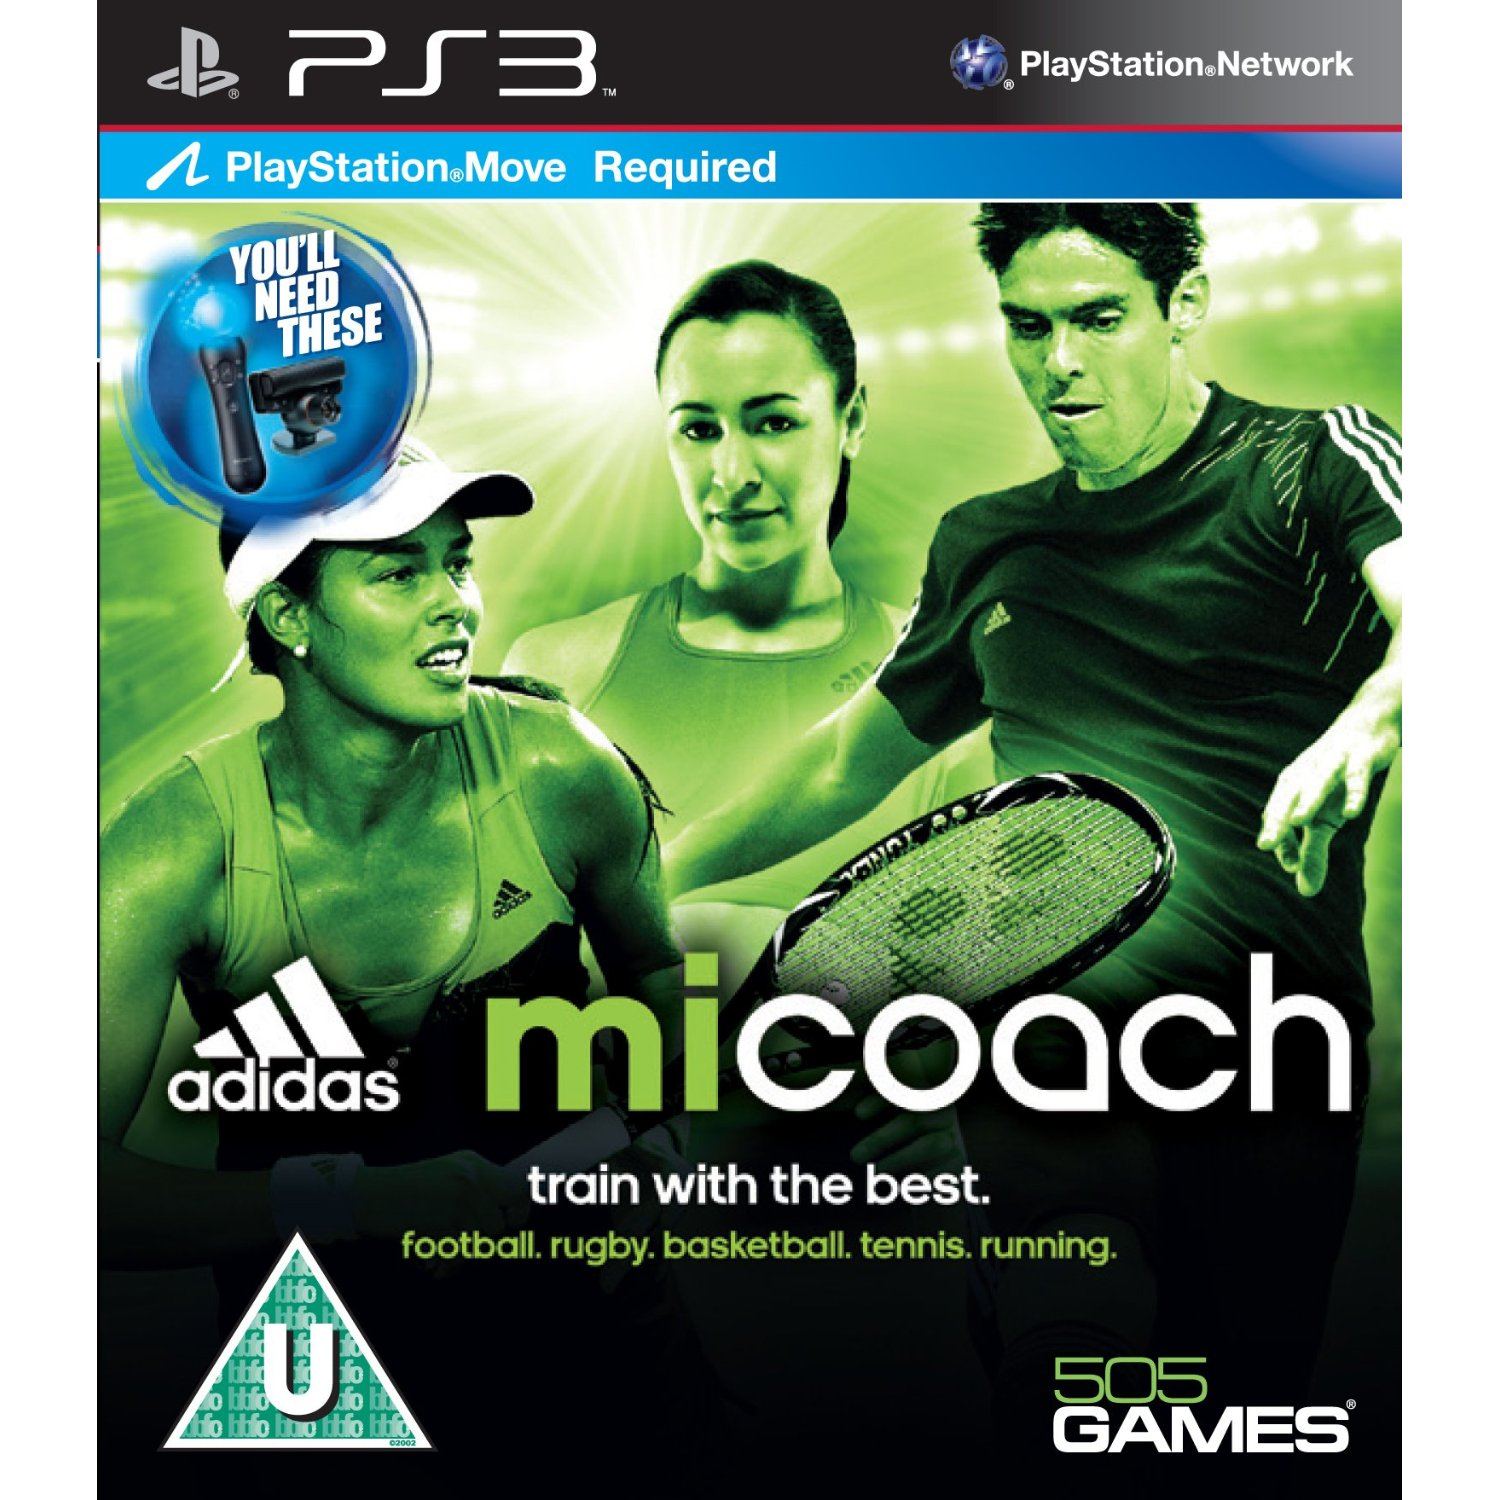 Adidas miCoach PlayStation 3